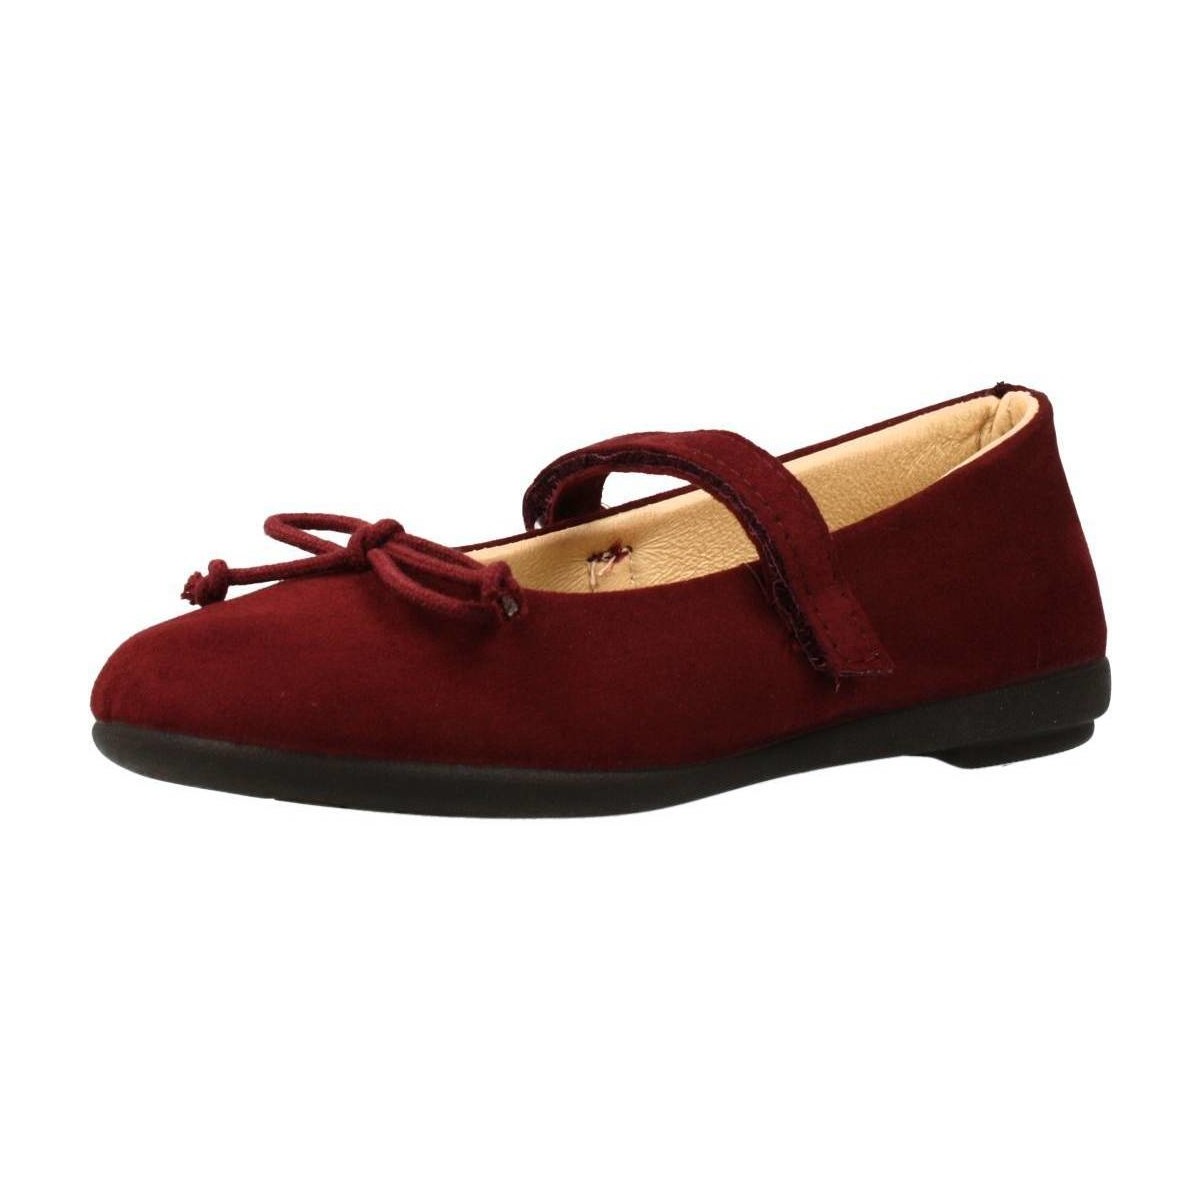 Παπούτσια Κορίτσι Derby & Richelieu Vulladi PARISINA Red